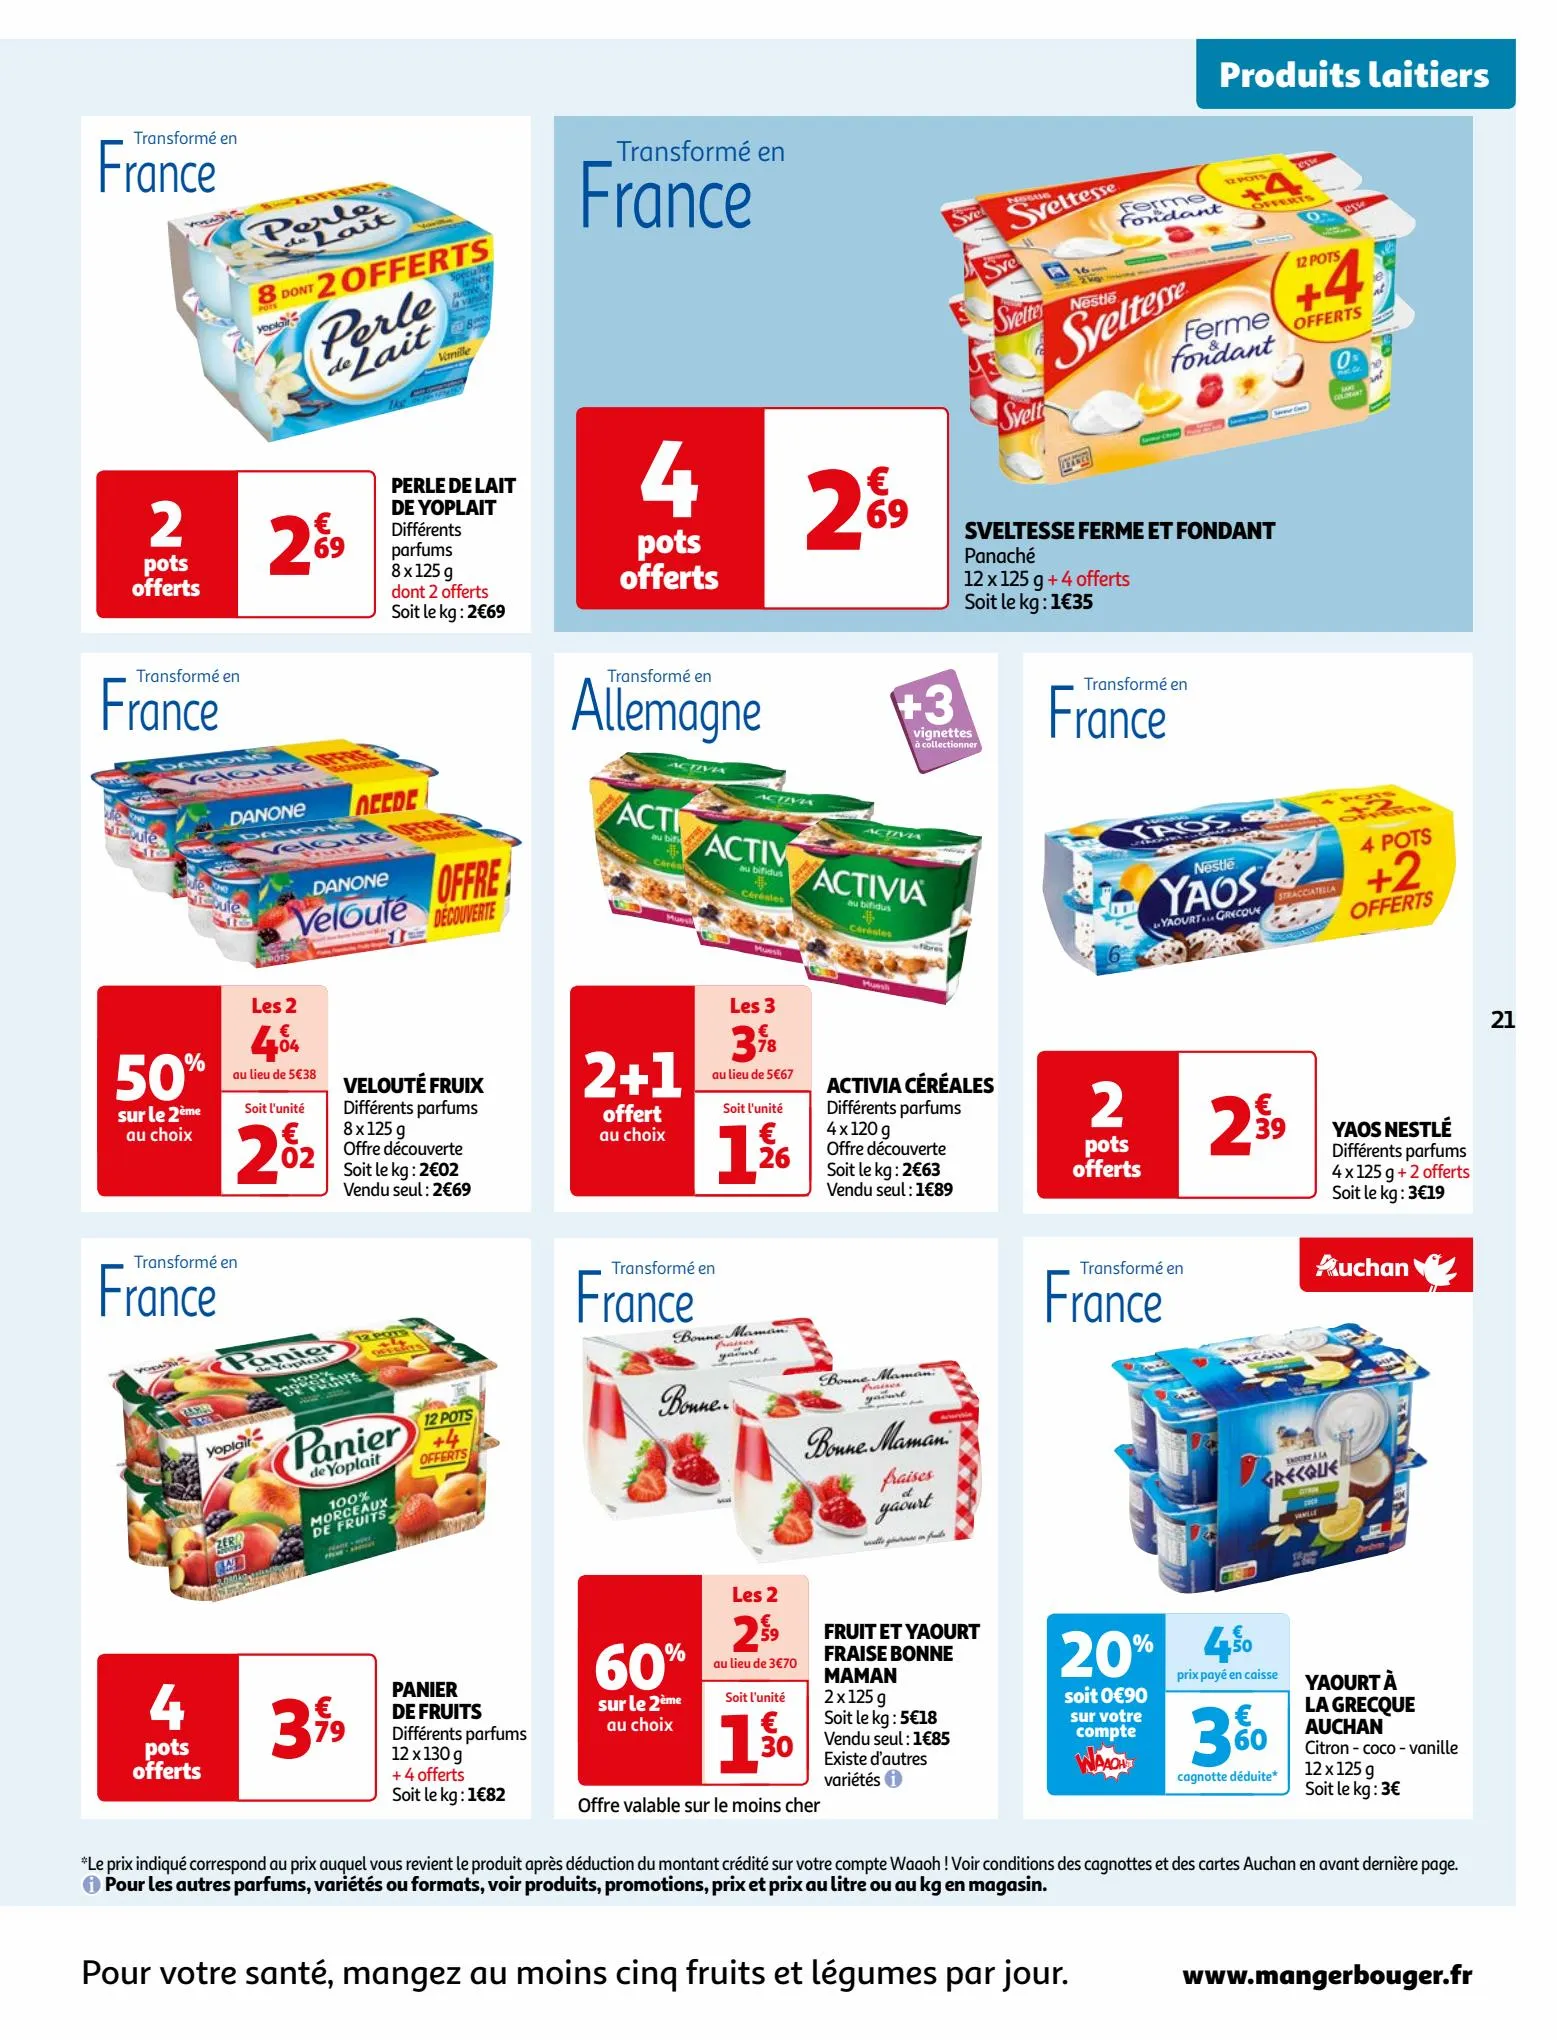 Catalogue Vos produits laitiers à petits prix !, page 00021